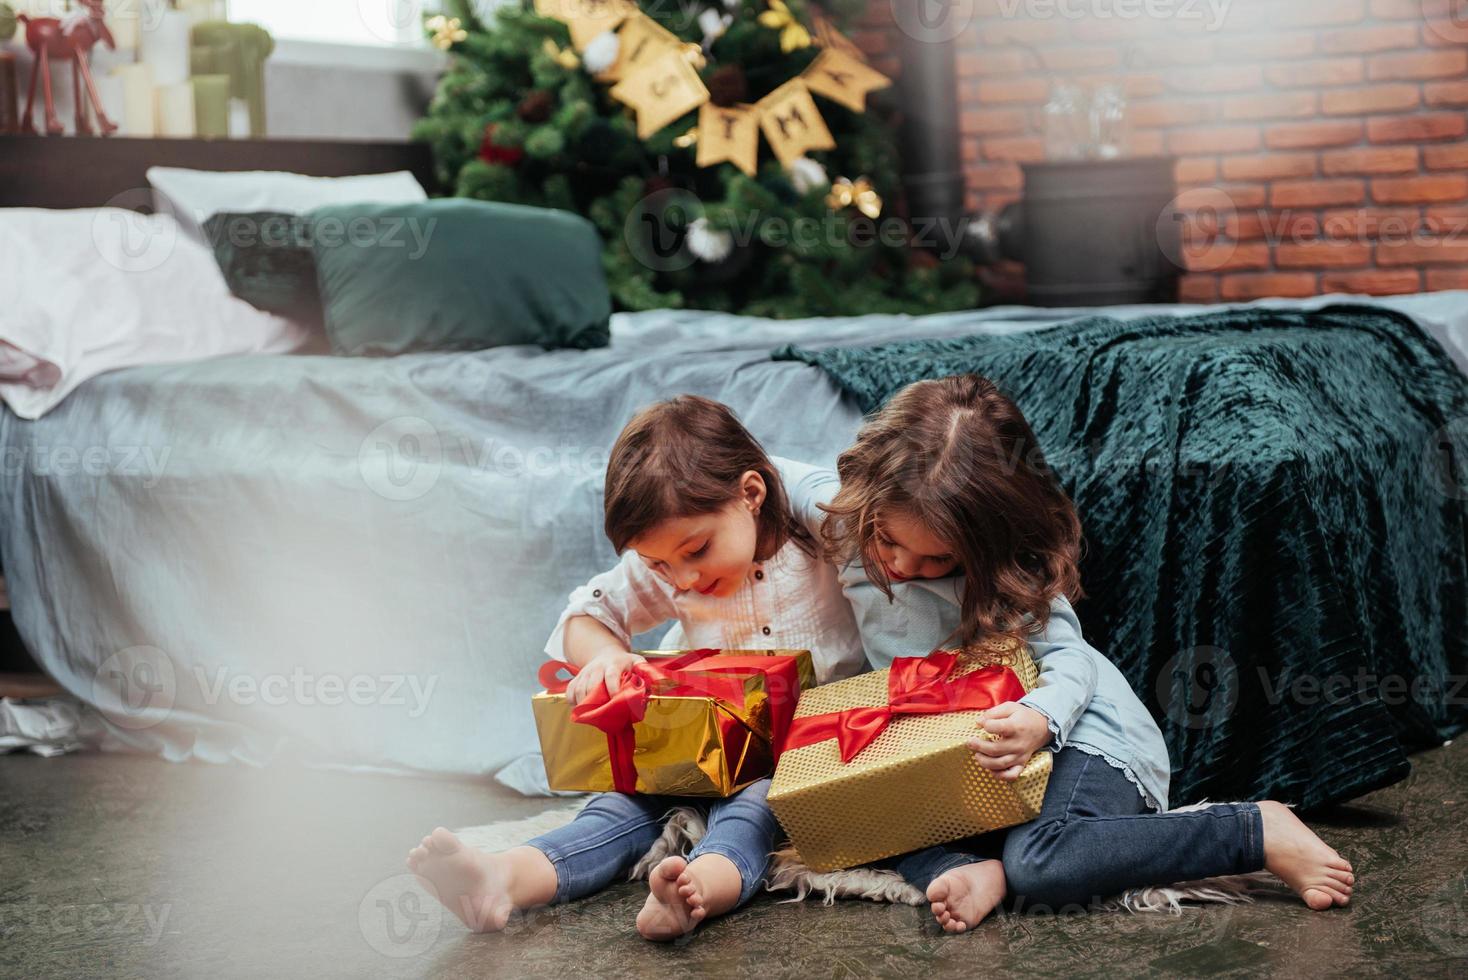 vrienden omhelzen elkaar. kerstvakantie met cadeaus voor deze twee kinderen die binnen zitten in de mooie kamer bij het bed foto